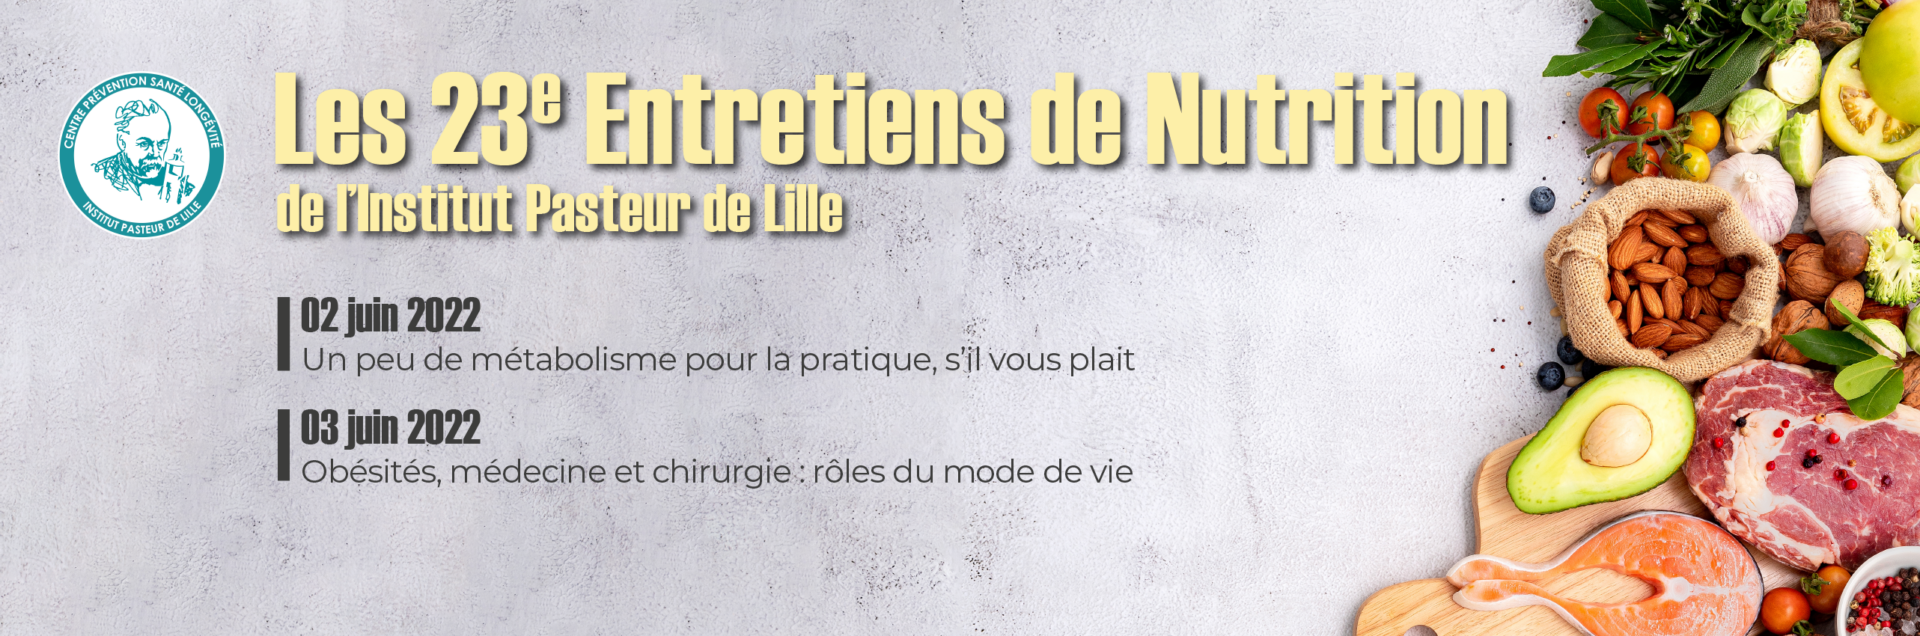 Bandeau de présenatation des 23e Entretiens de Nutrition de l'Institut Pasteur de Lille.